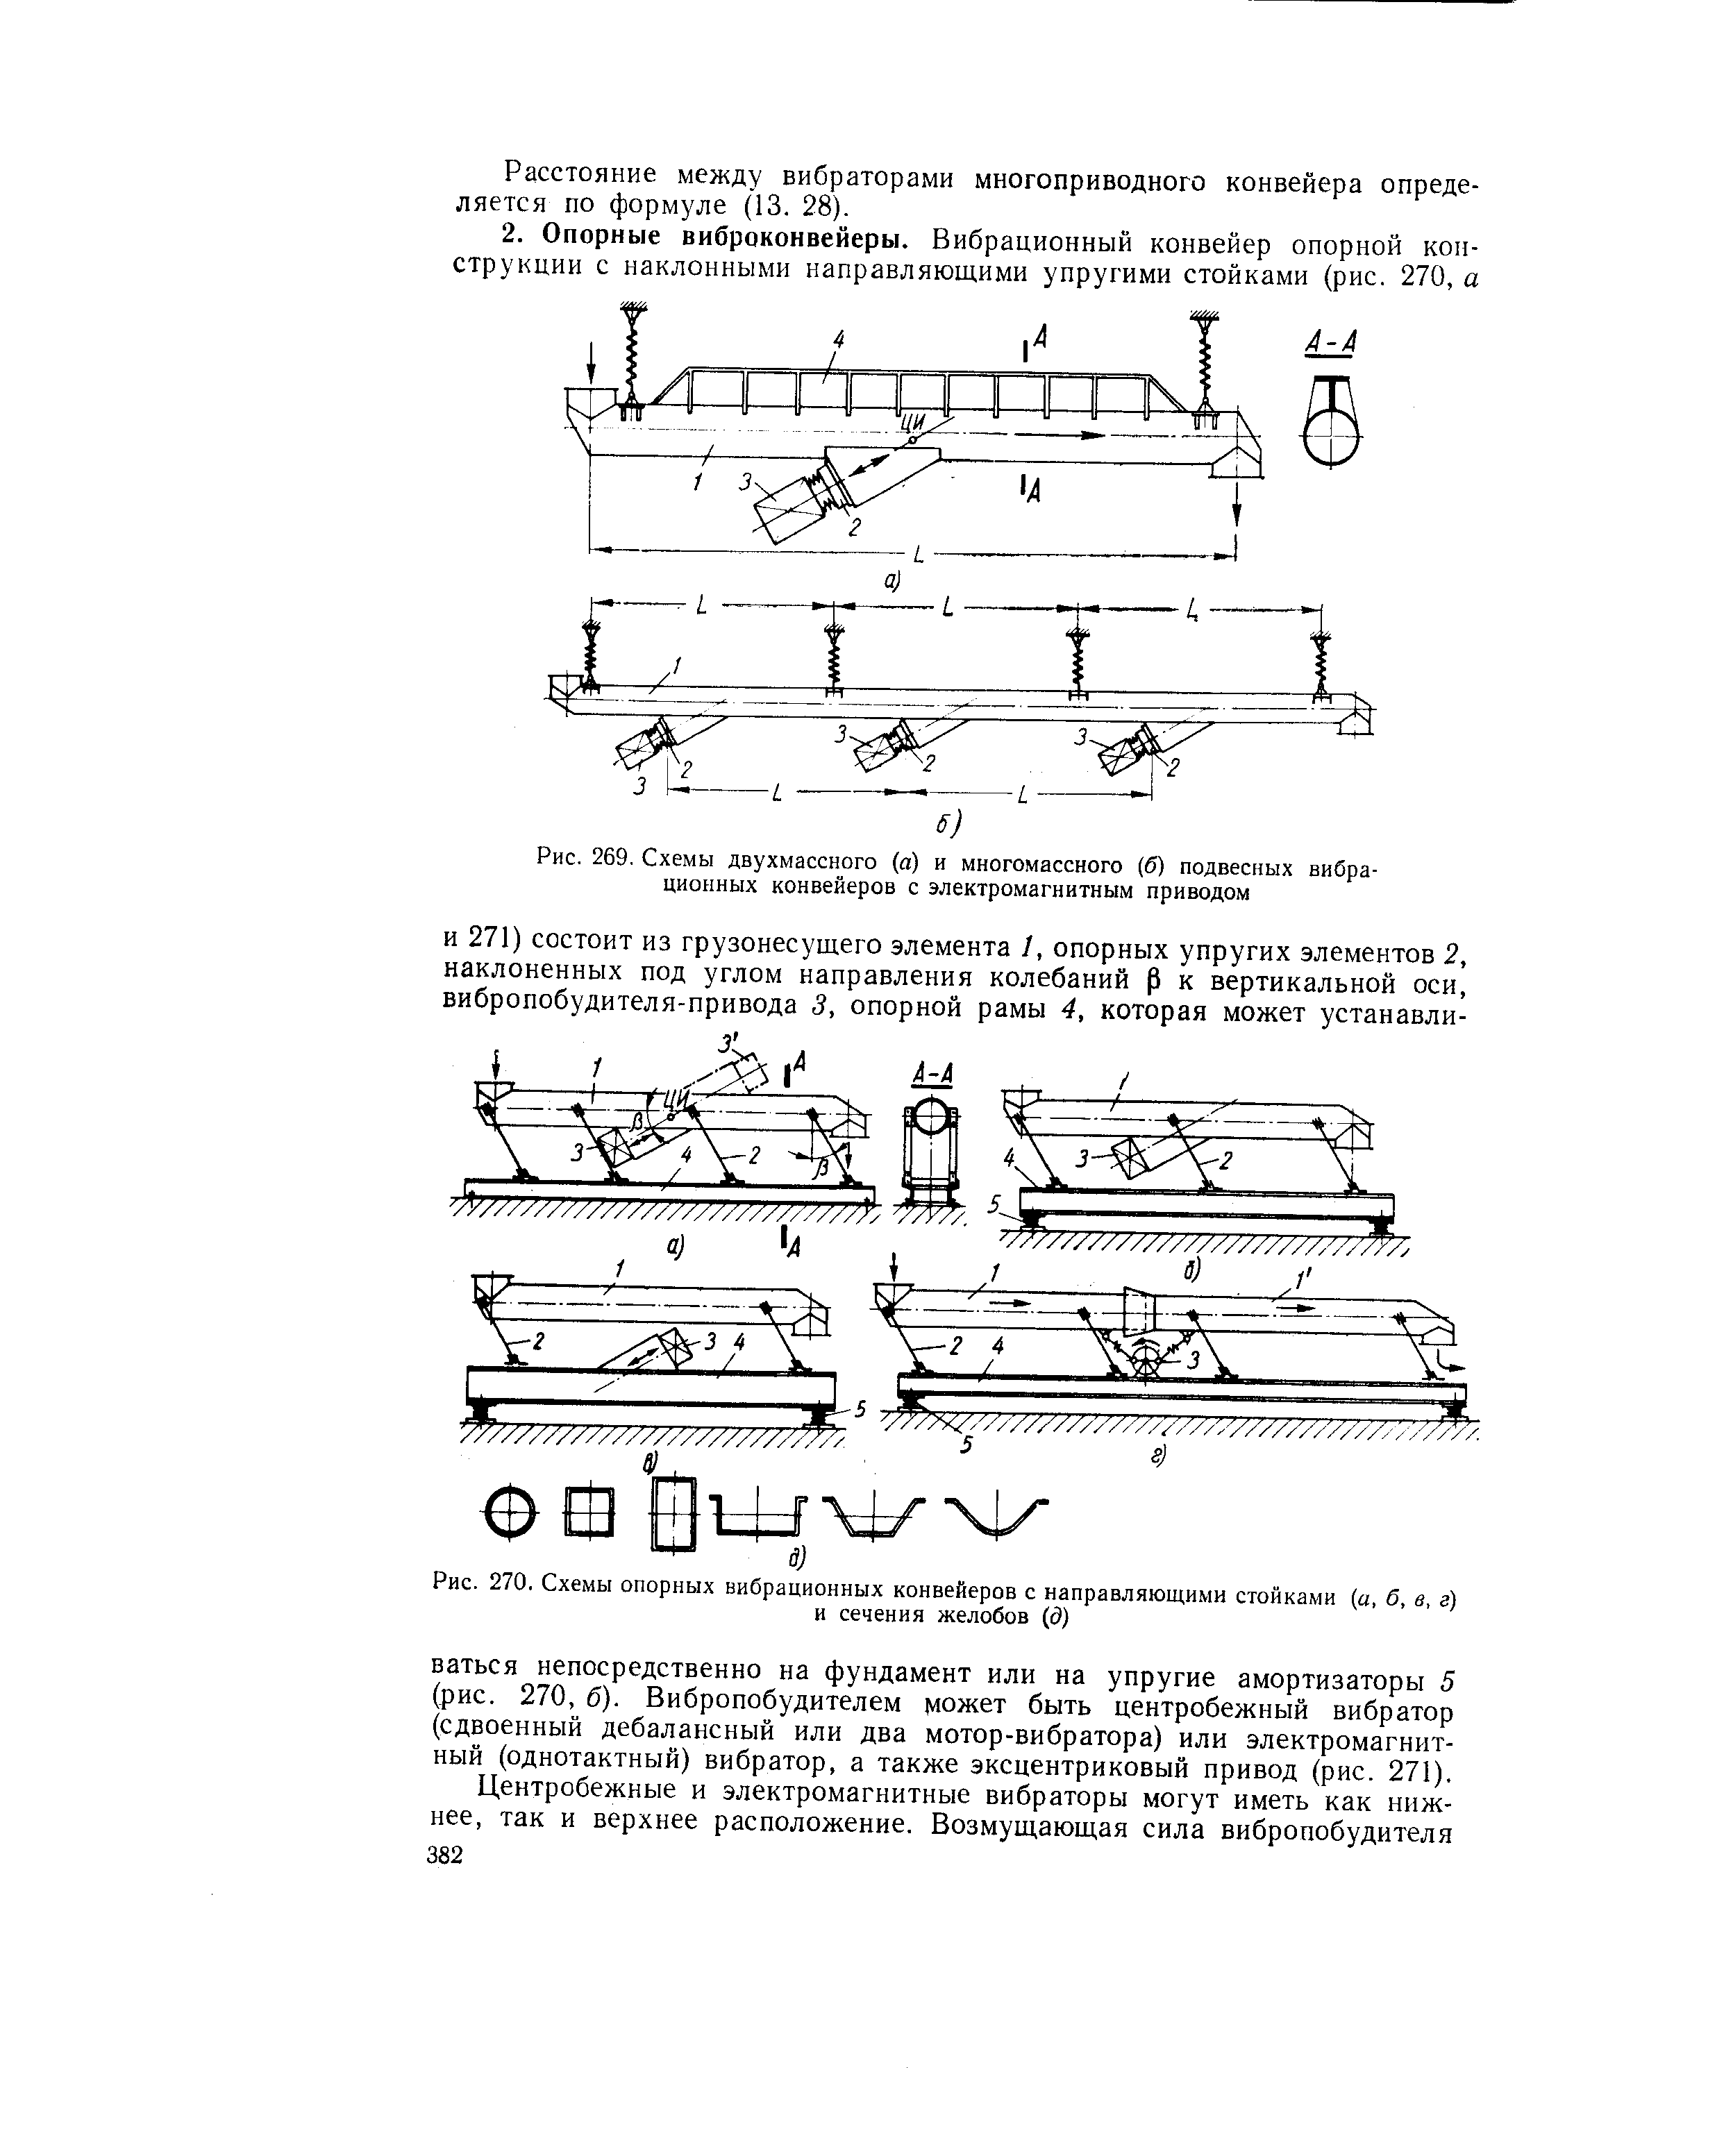 Рис. 269. Схемы двухмассного (а) и многомассного (б) подвесных вибрационных конвейеров с электромагнитным приводом
